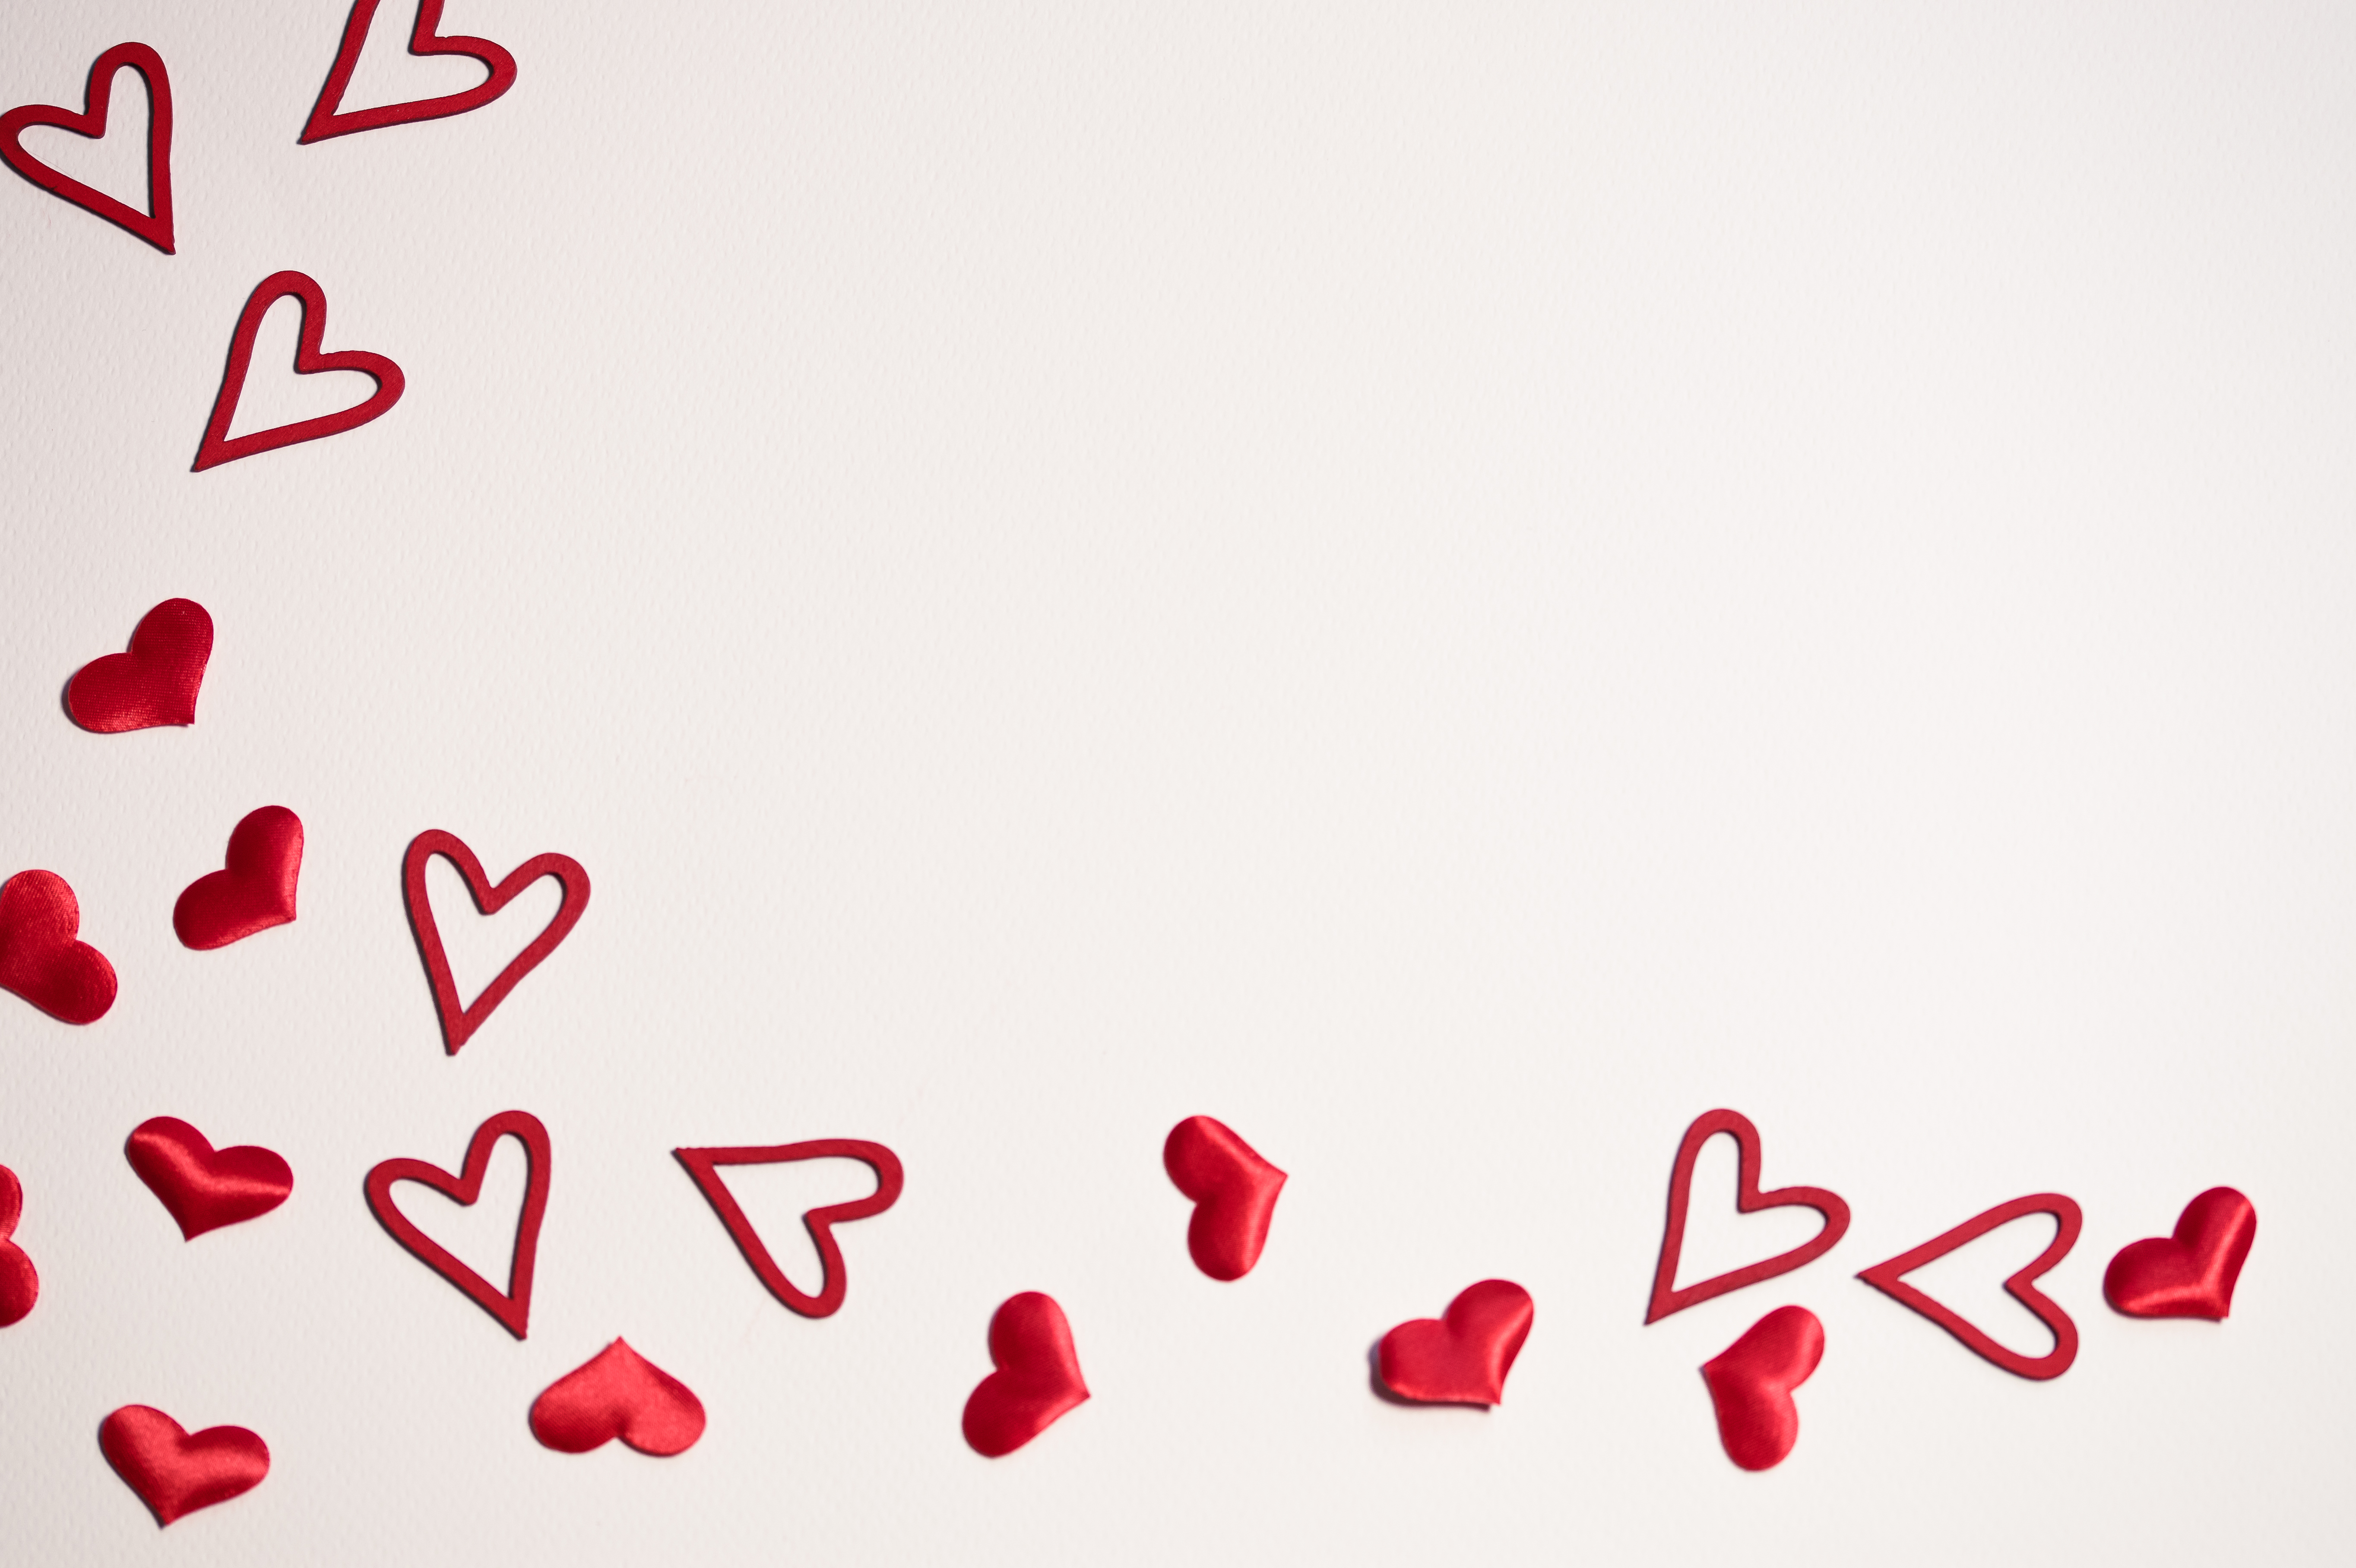 Фото обои, фон, любовь, Валентина, День святого Валентина, валентинки, сердца, сердце, красный, смс, шрифт, дизайн изделия, лепесток, бренд, настроение - бесплатные картинки на Fonwall